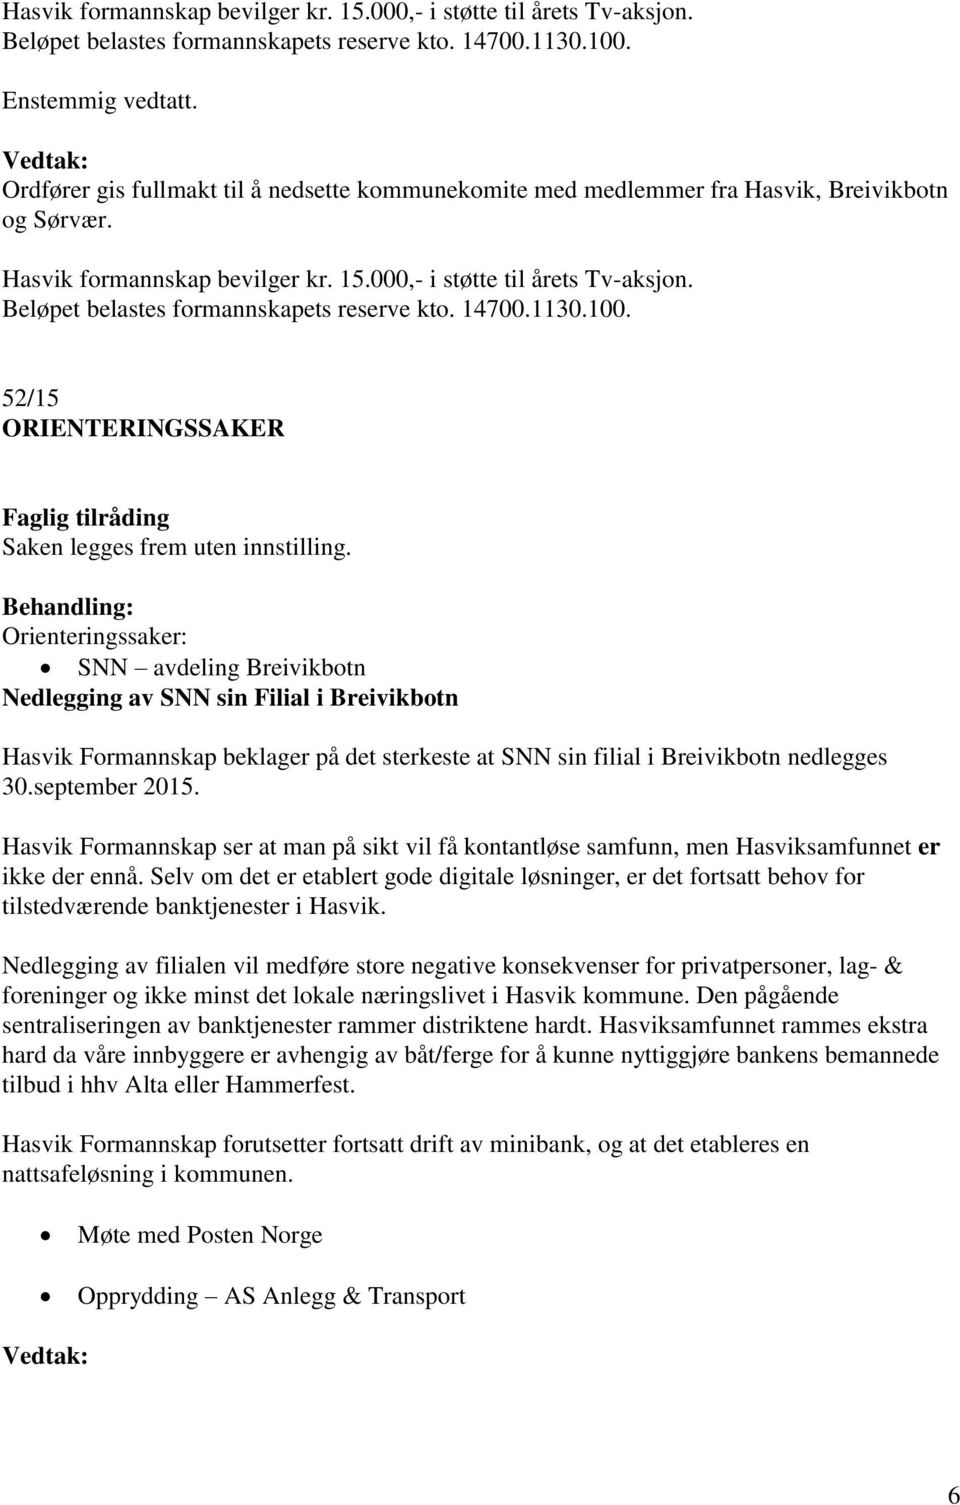 Orienteringssaker: SNN avdeling Breivikbotn Nedlegging av SNN sin Filial i Breivikbotn Hasvik Formannskap beklager på det sterkeste at SNN sin filial i Breivikbotn nedlegges 30.september 2015.